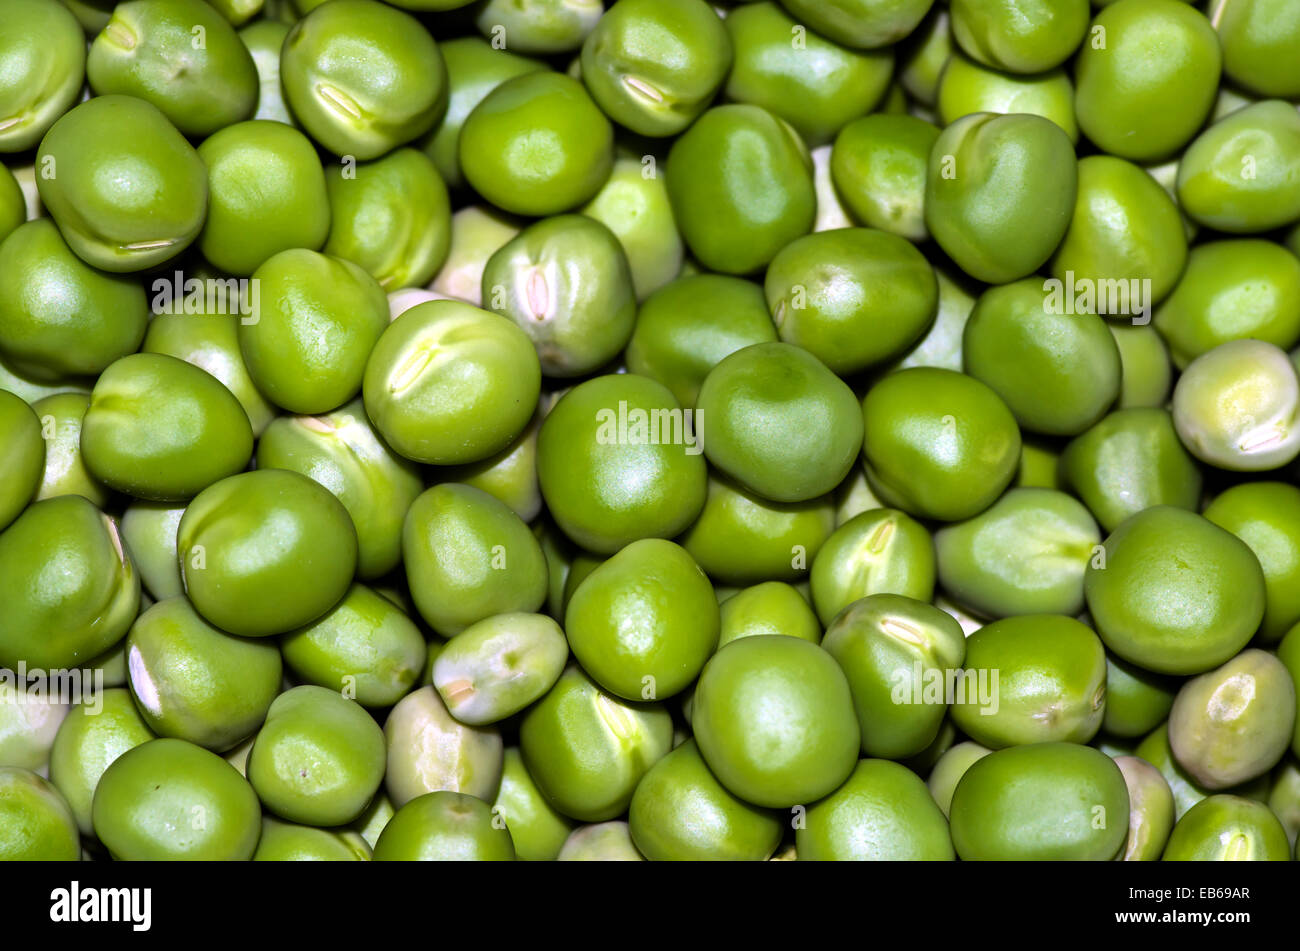 Freen peas Stock Photo